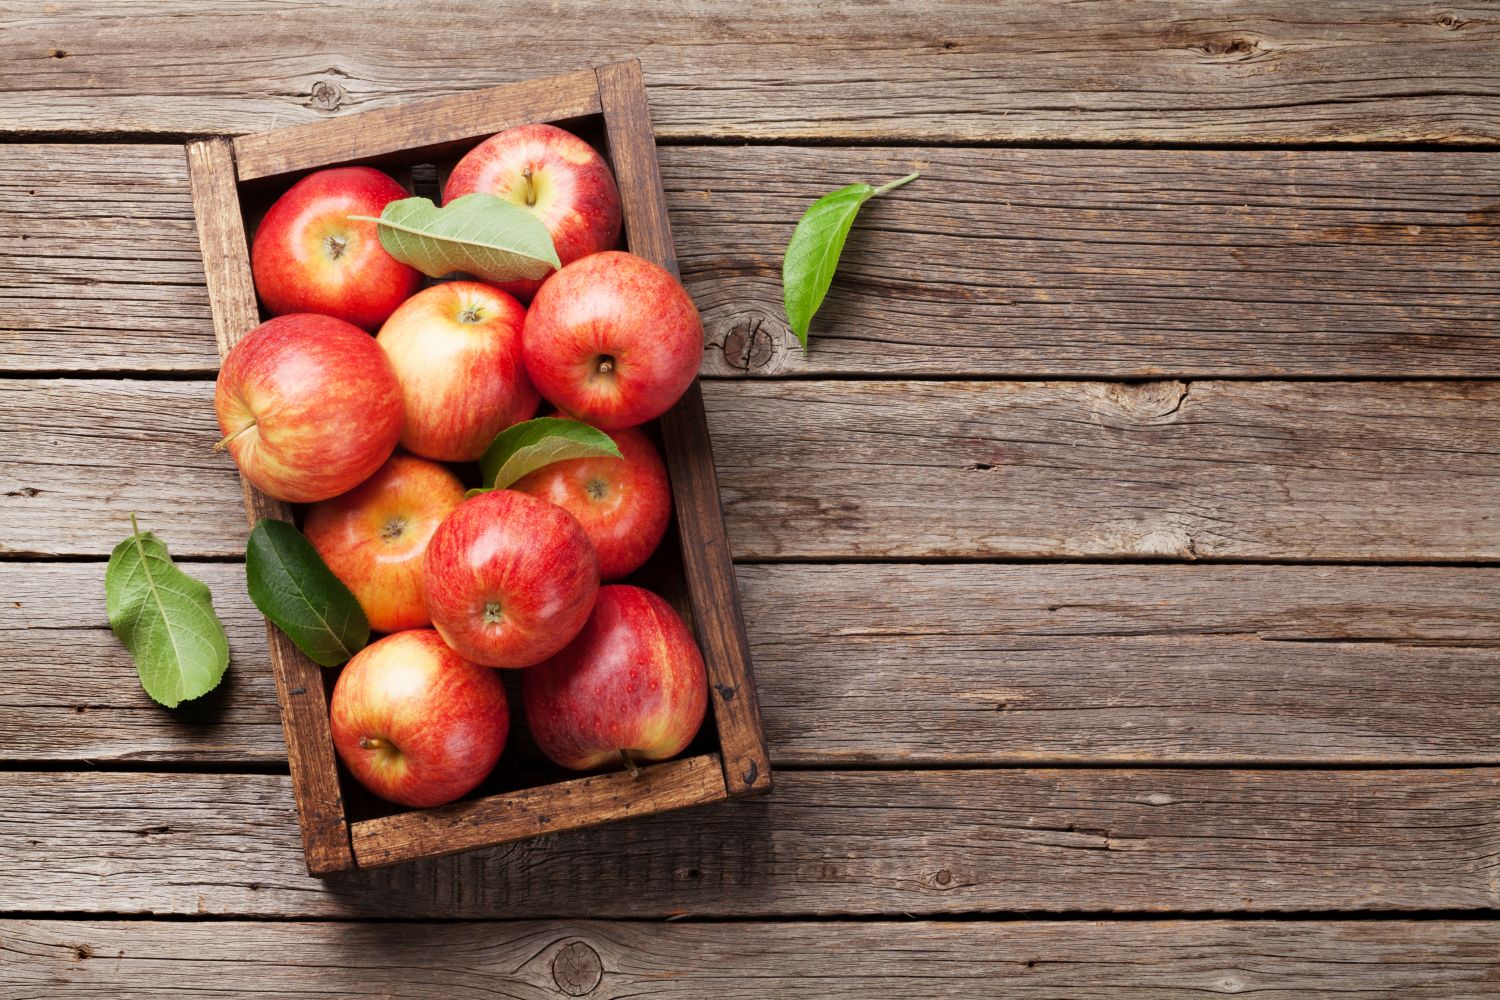 Apple Picking Guide: 7 Tips for Harvesting Apples